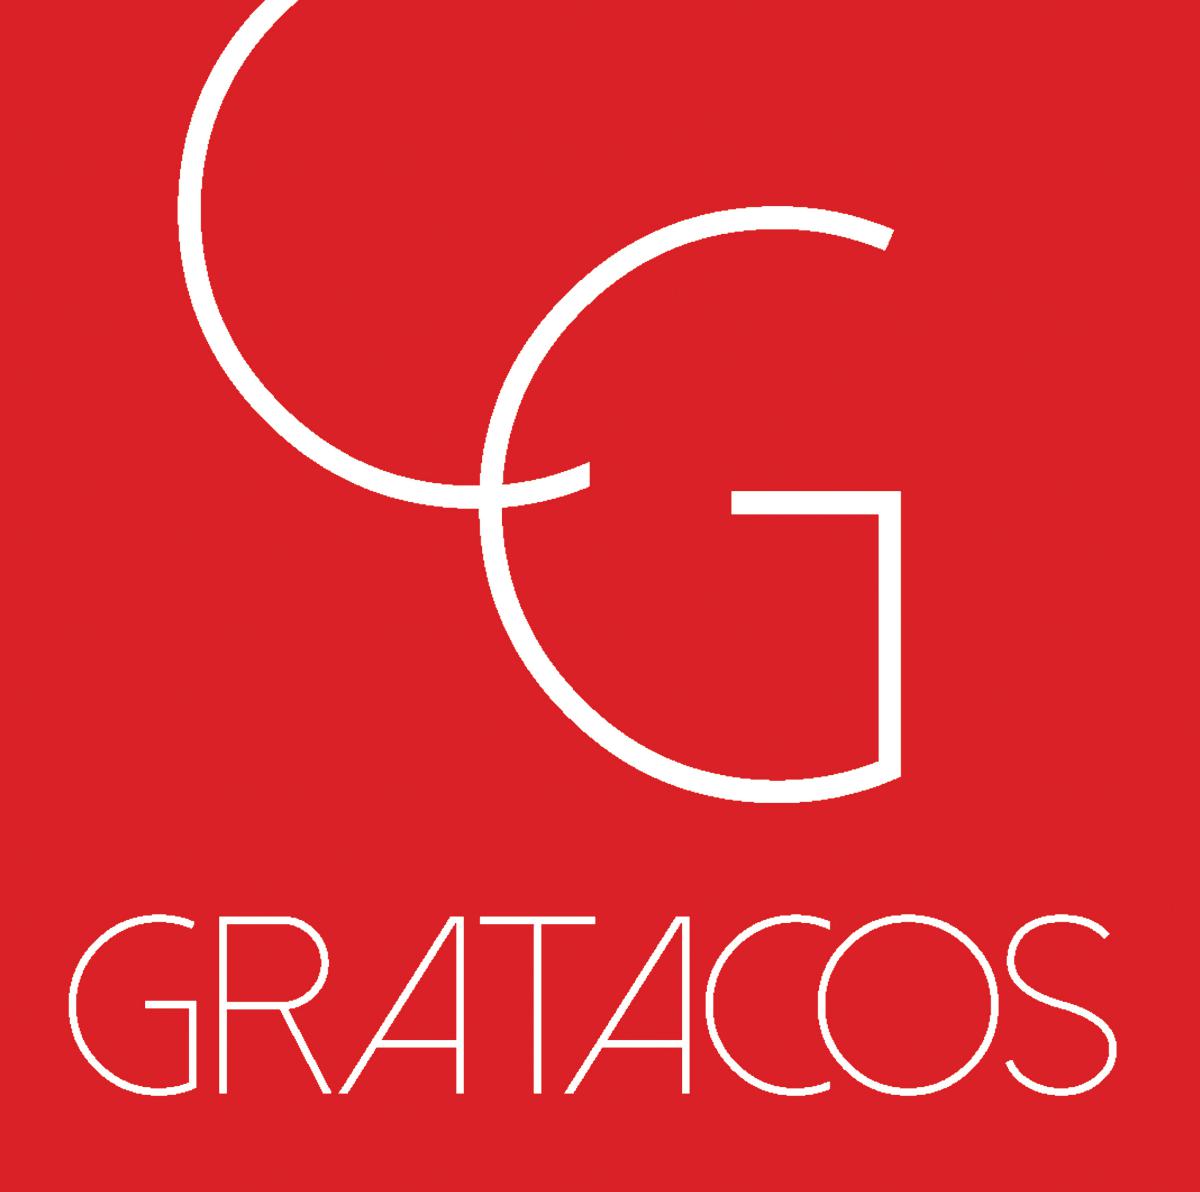 Logo Cuisines Gratacos